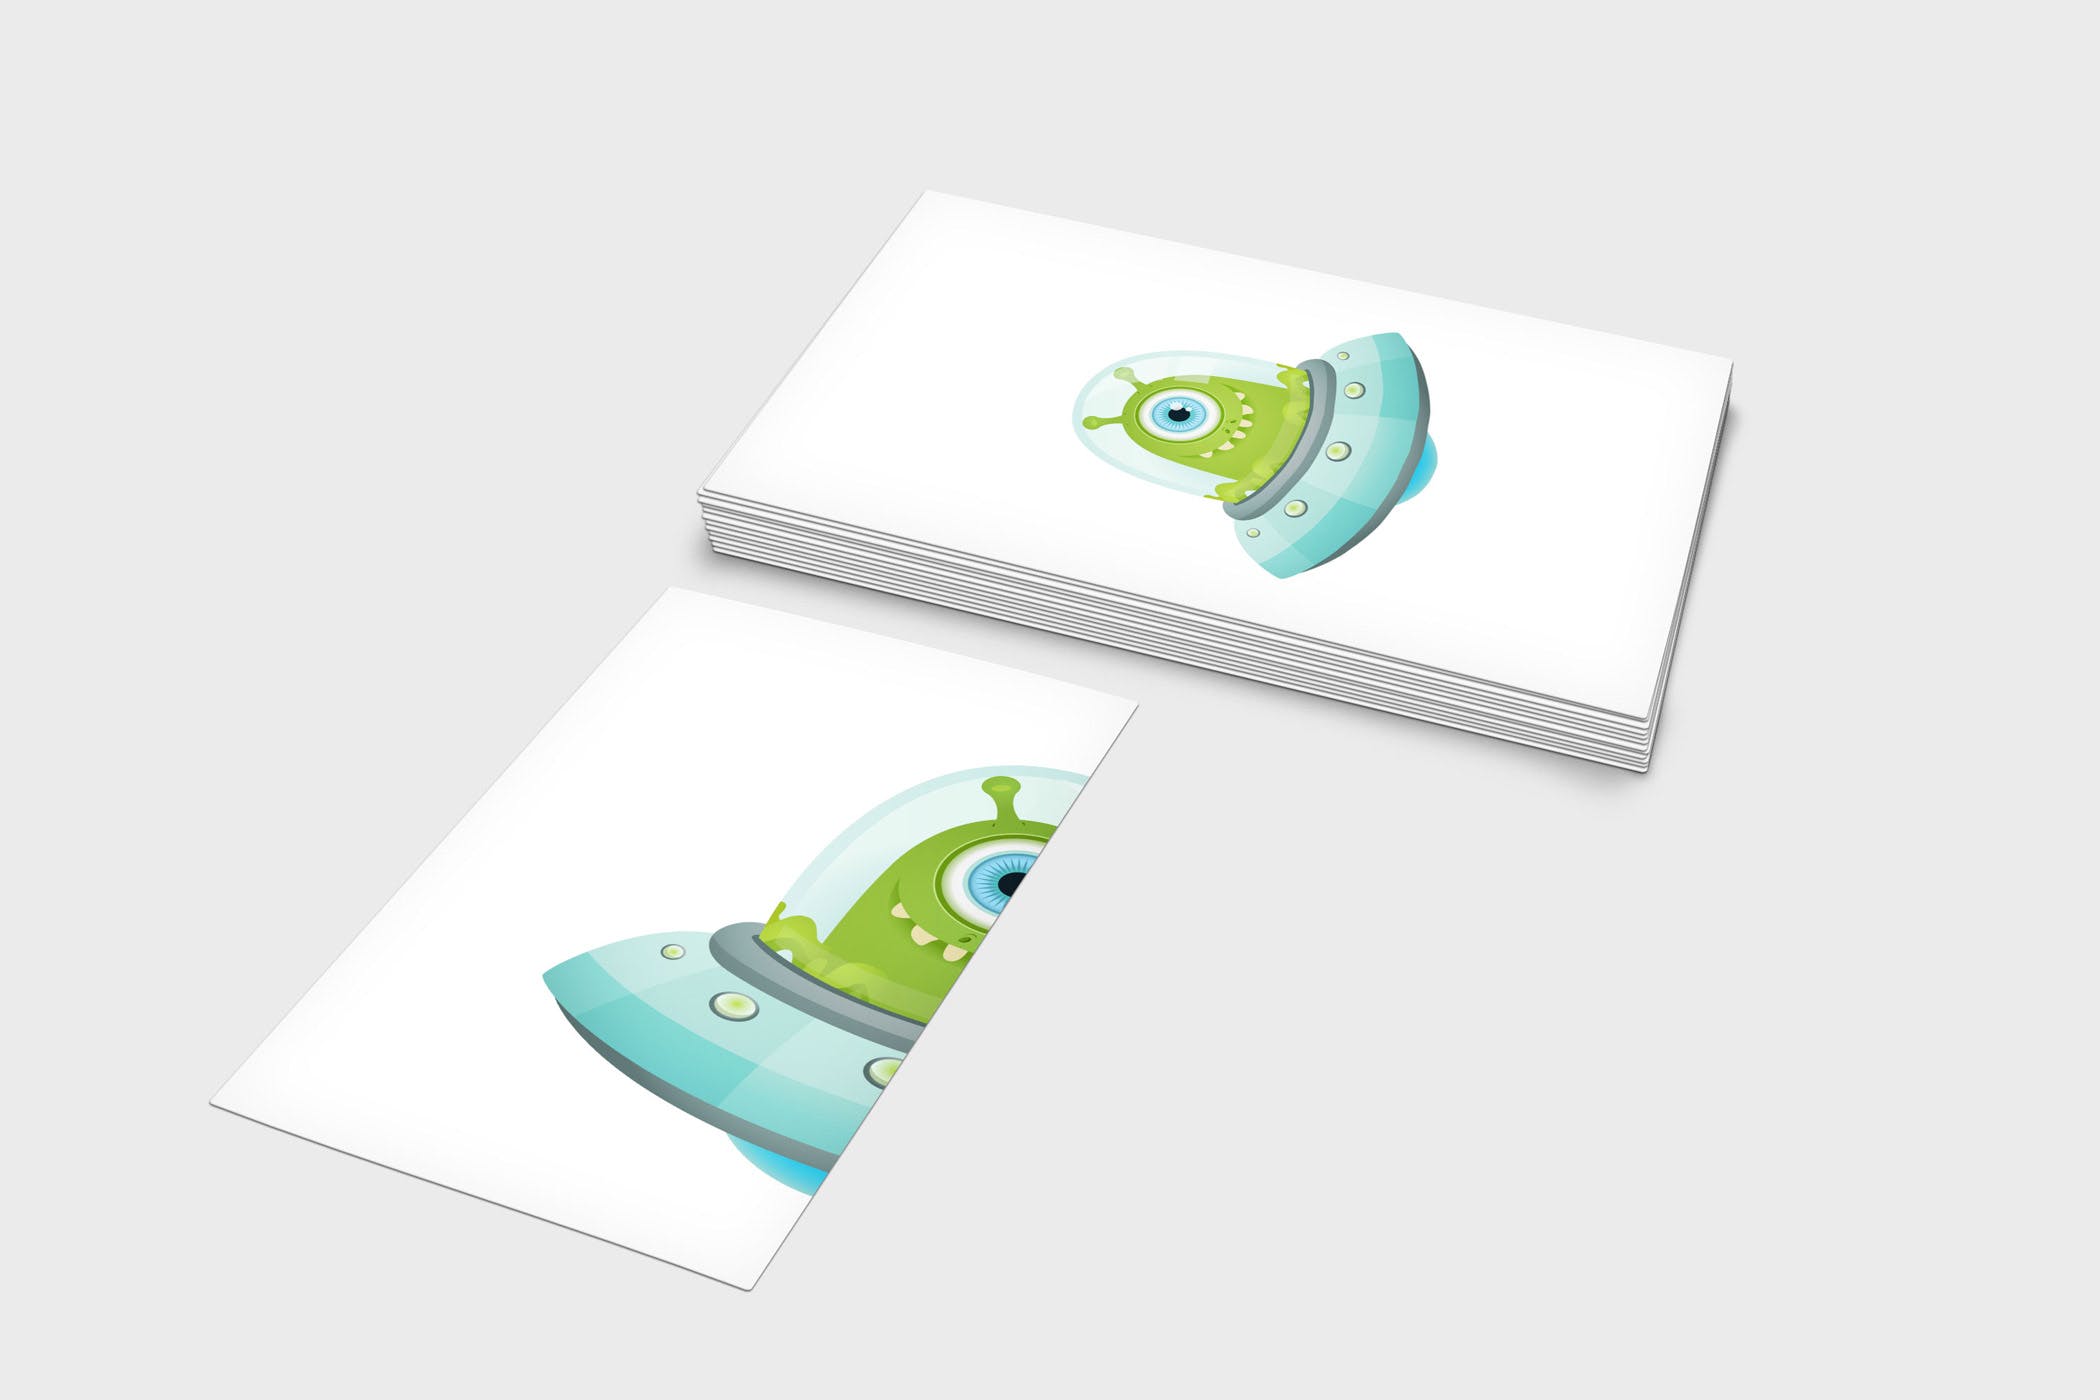 企业名片设计效果图展示样机大洋岛精选模板 4 Business Card Mock-Up Template插图3